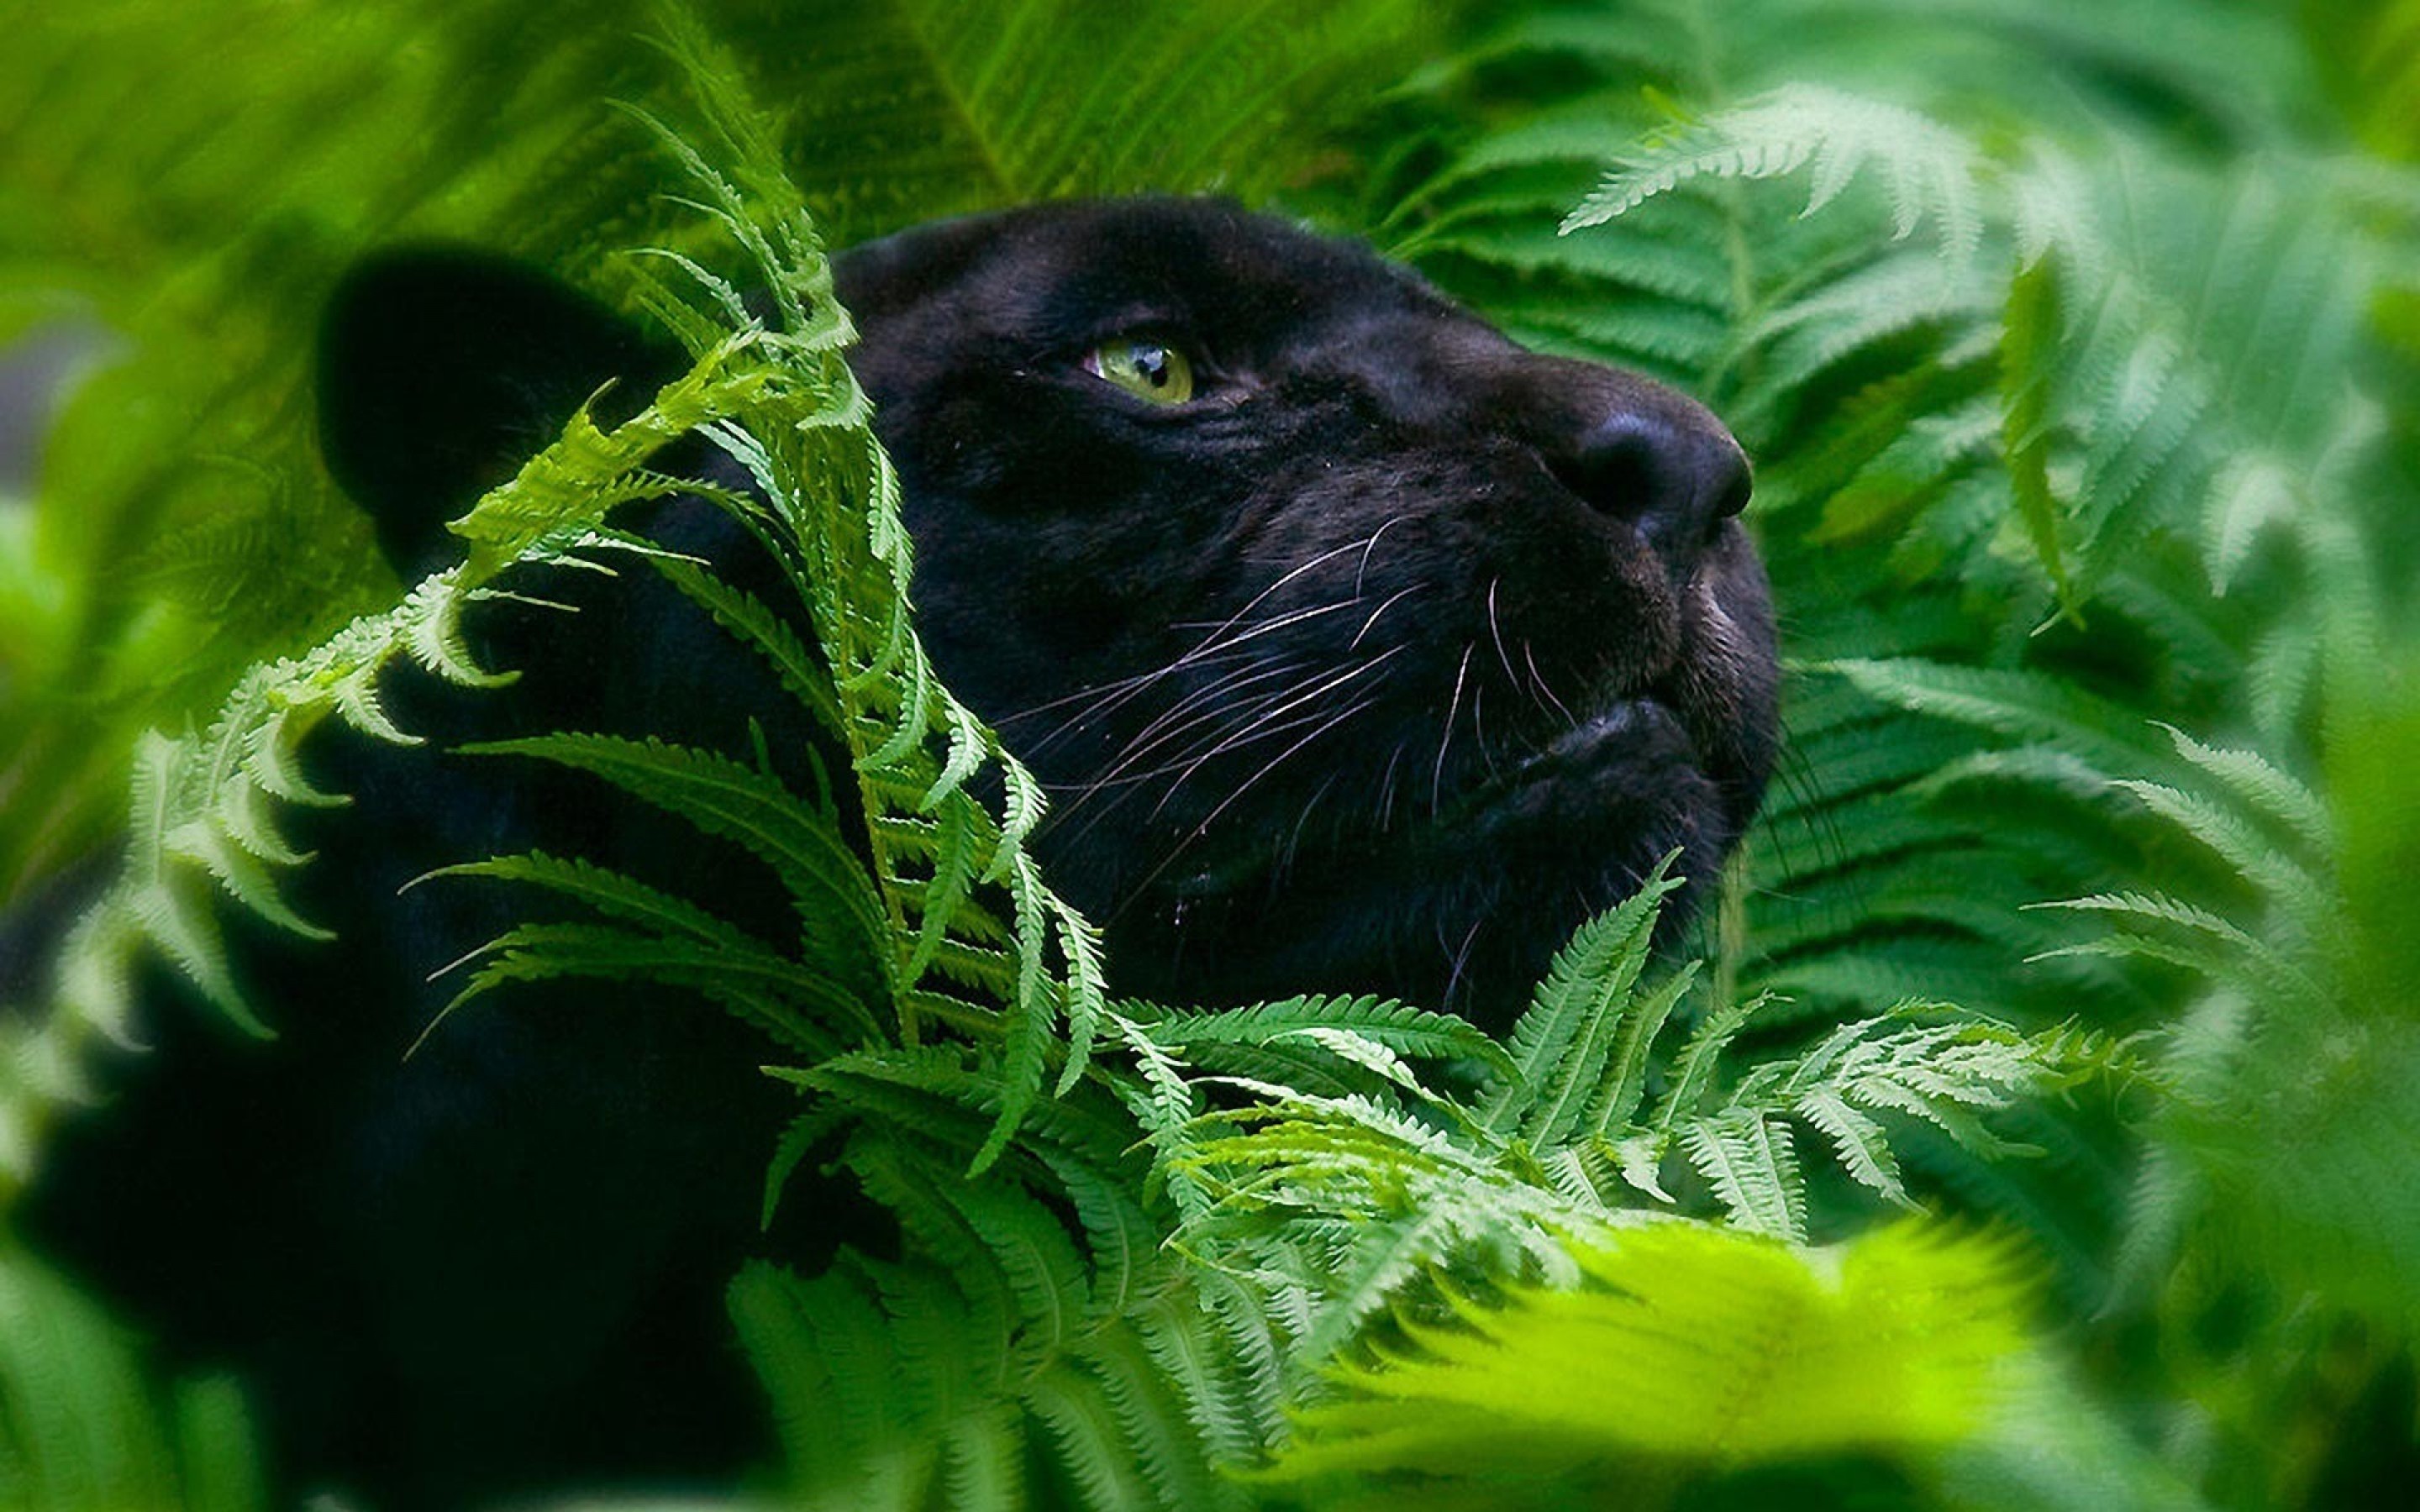 Black Panther Animal Desktop Wallpaper - Black Panther In Leaves -  2880x1800 Wallpaper 